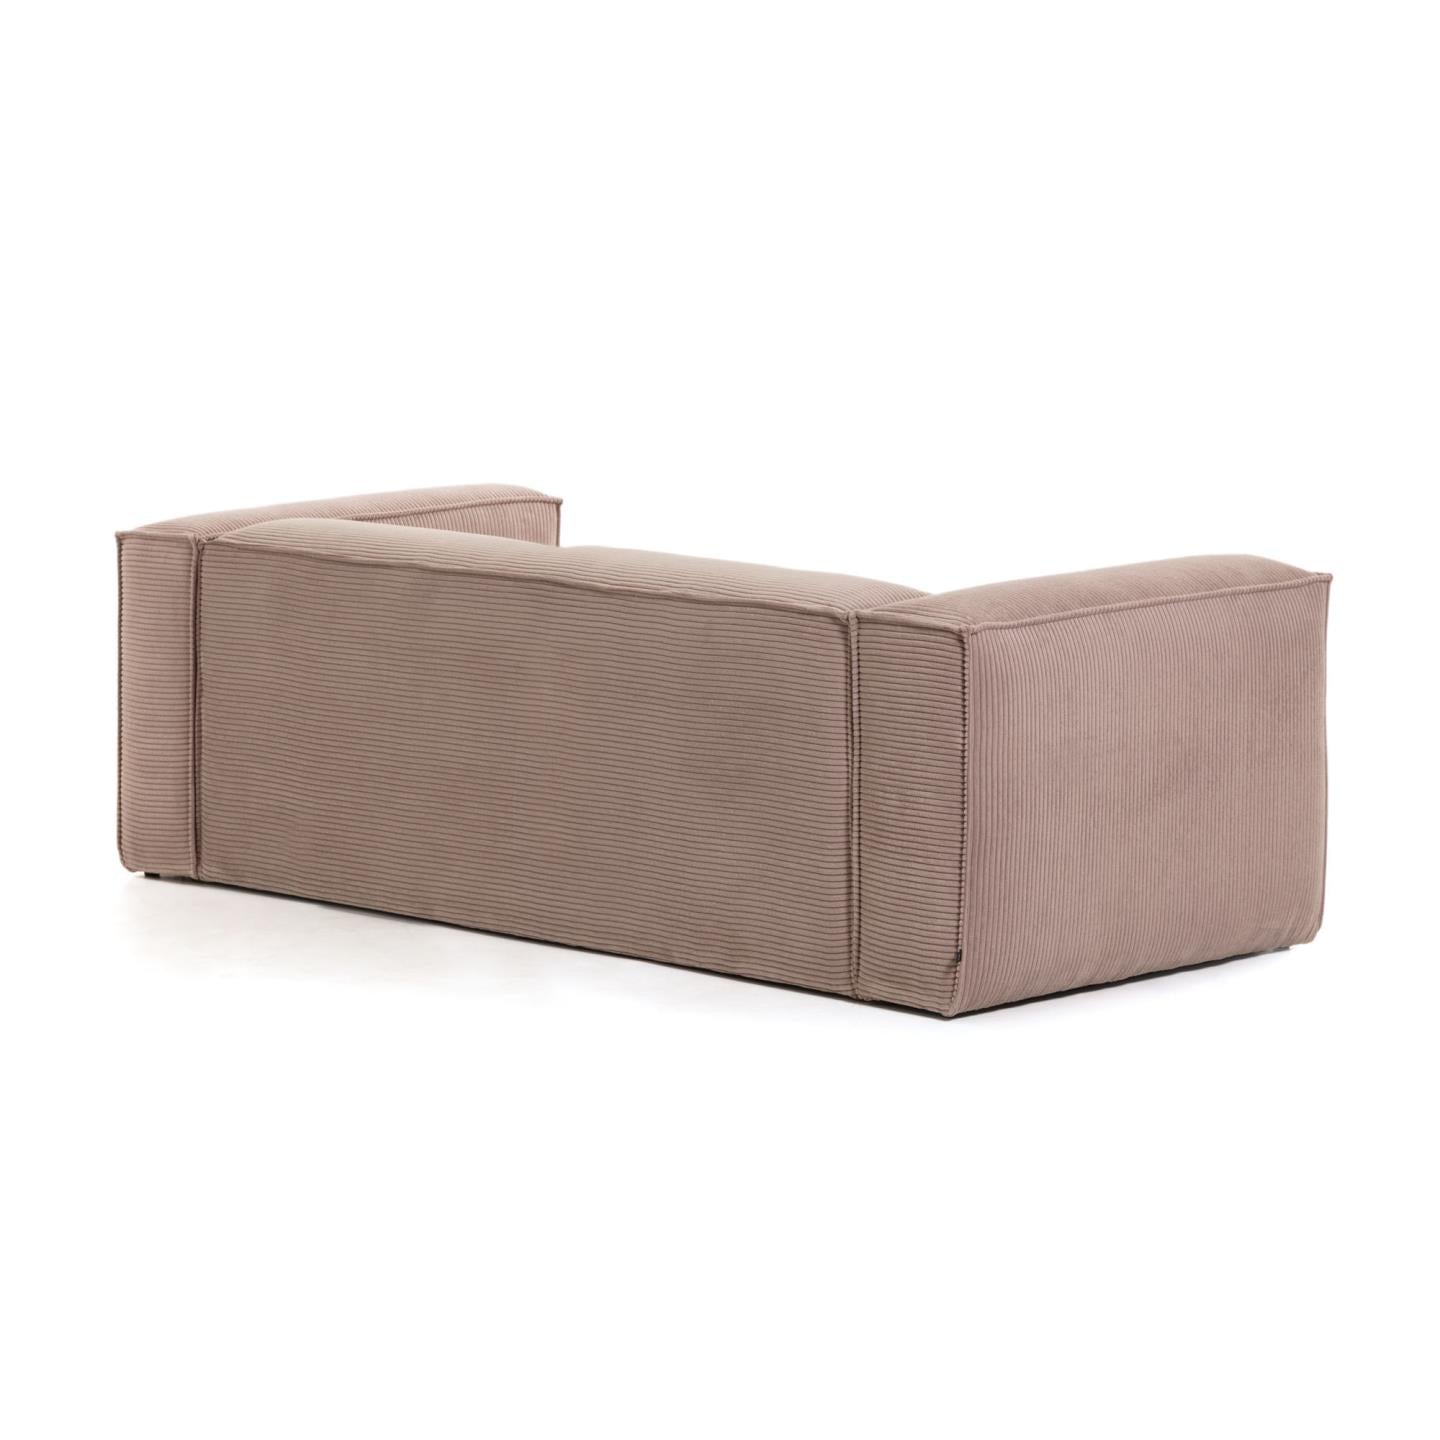 Blok 3 személyes kanapé rózsaszín, széles varrású kordbársonyból, 240 cm